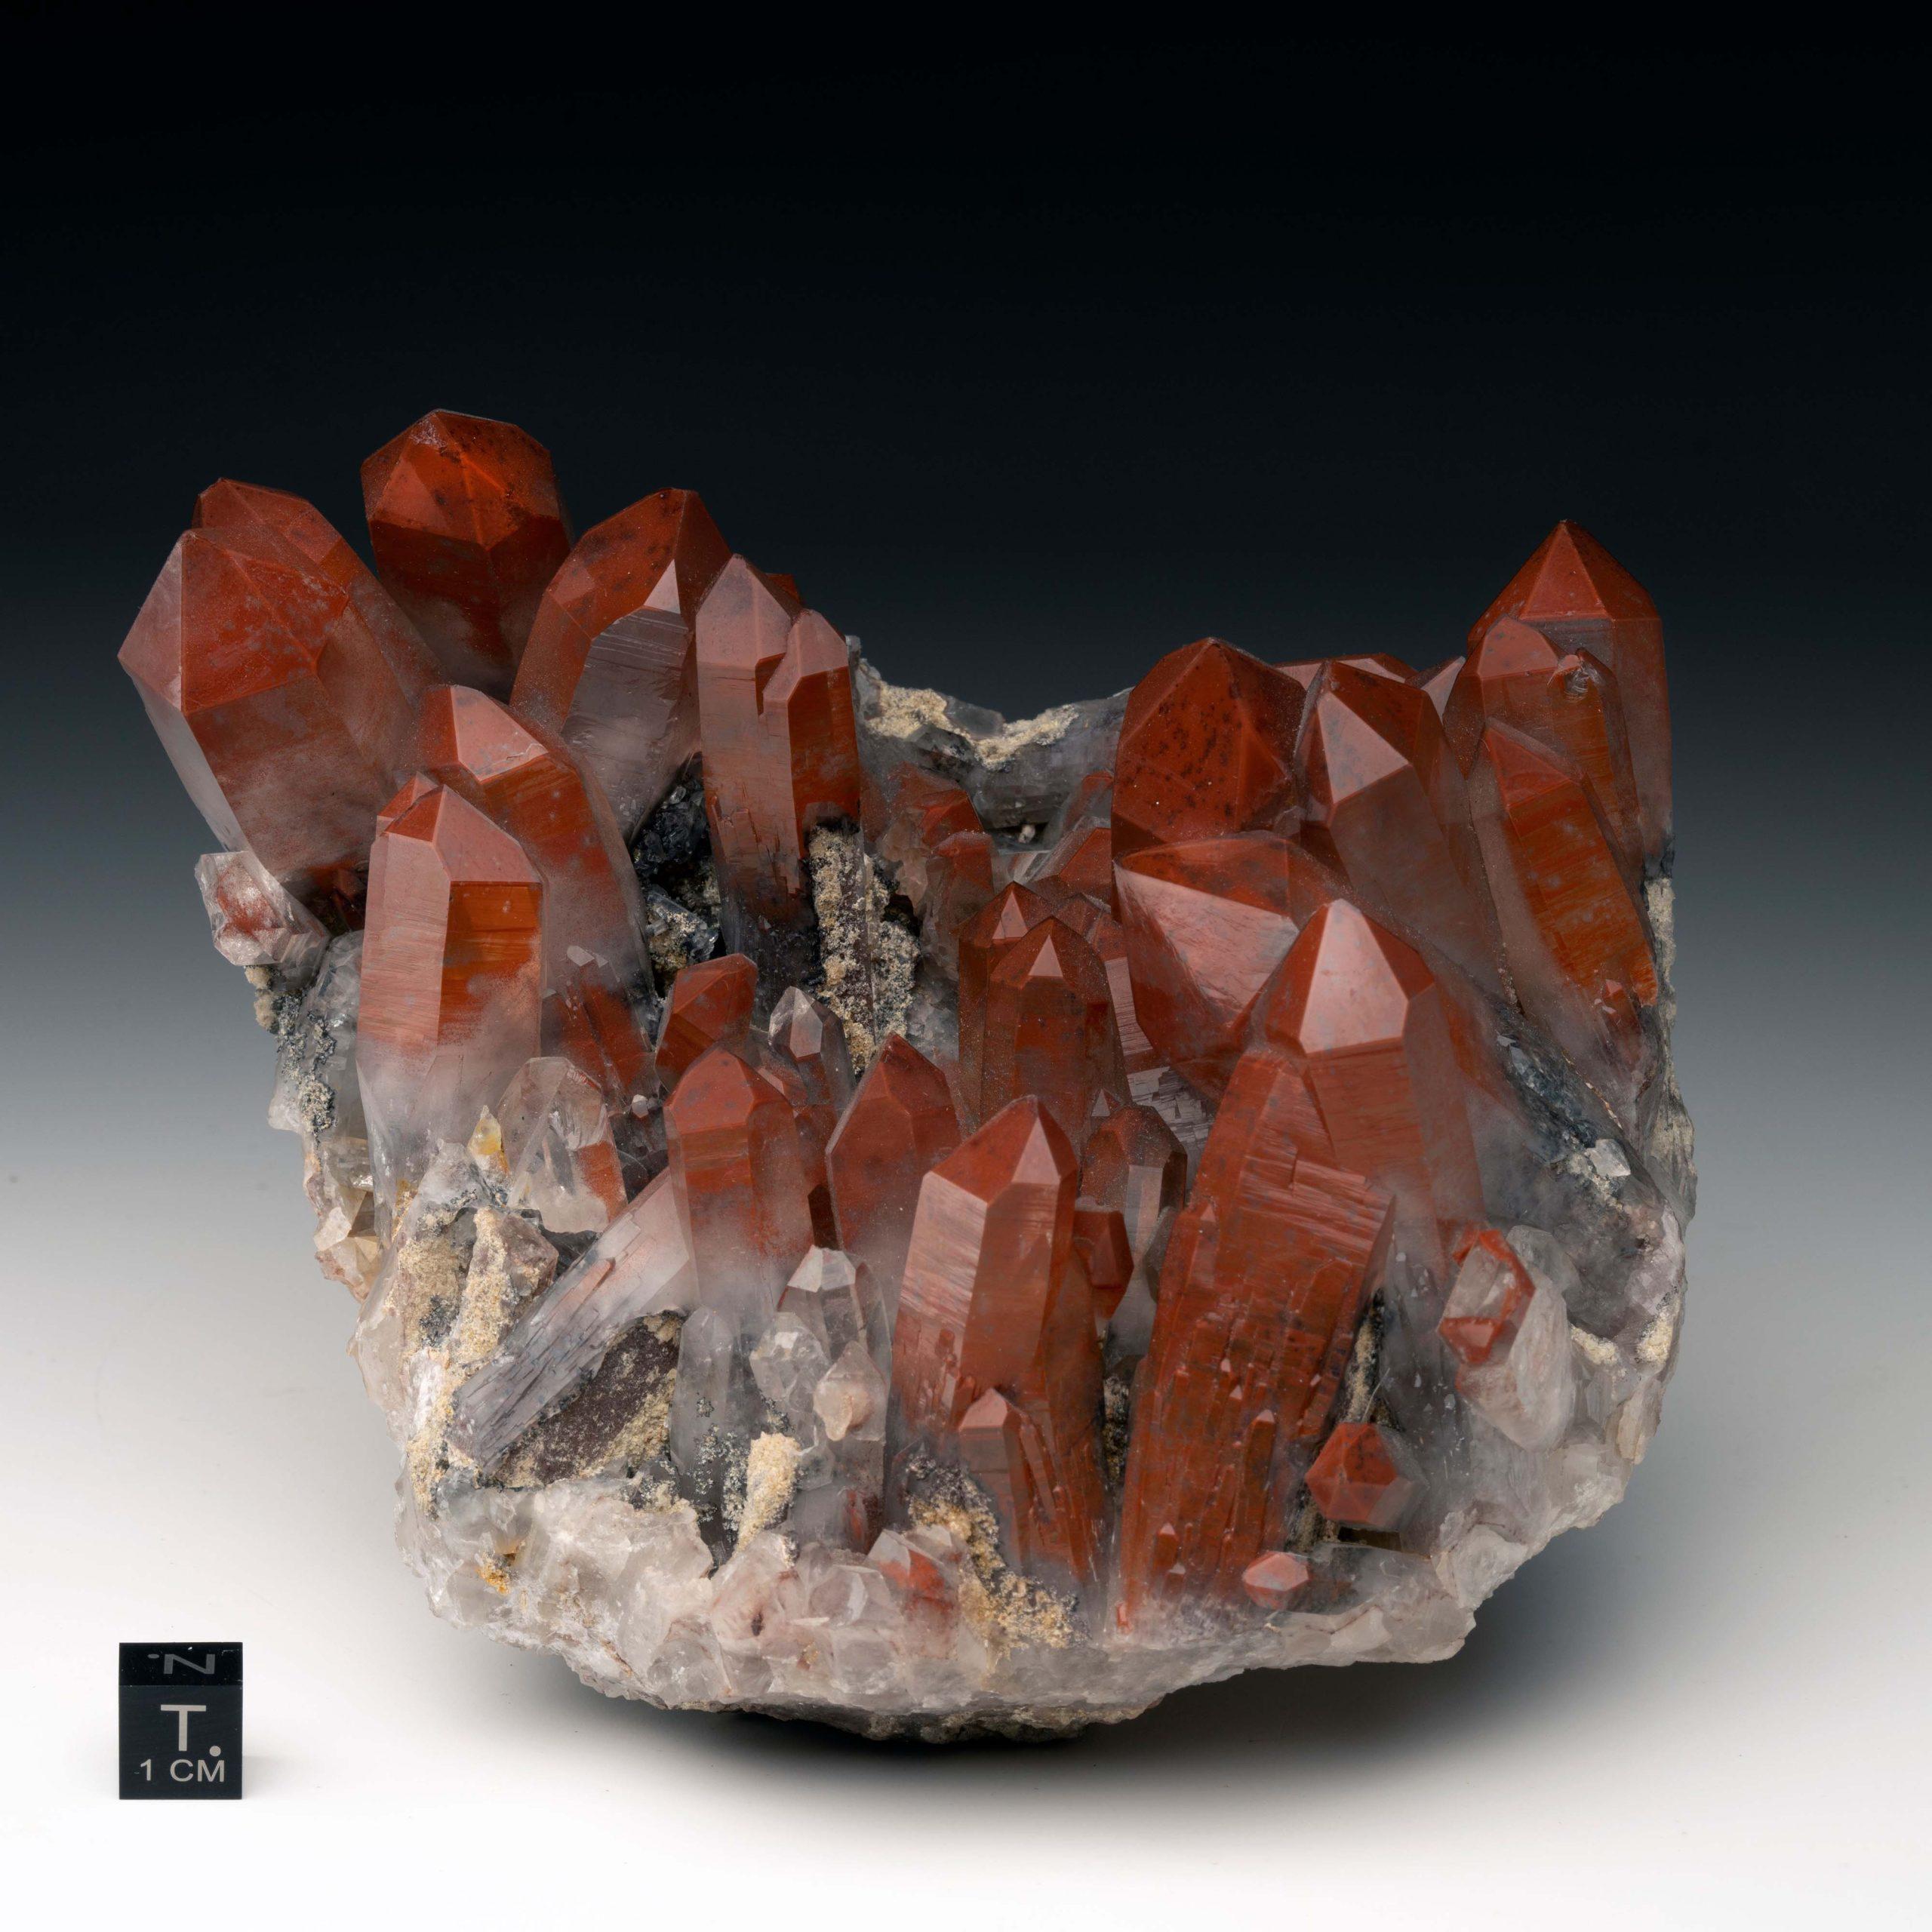 Rivière Orange, Namibie

Cet amas de quartz rouge de grande taille doit sa rare couleur rouge feu à des inclusions d'hématite recouvertes de quartz clair et translucide. De multiples fantômes d'hématite sont disséminés dans cette pièce. Ce spécimen